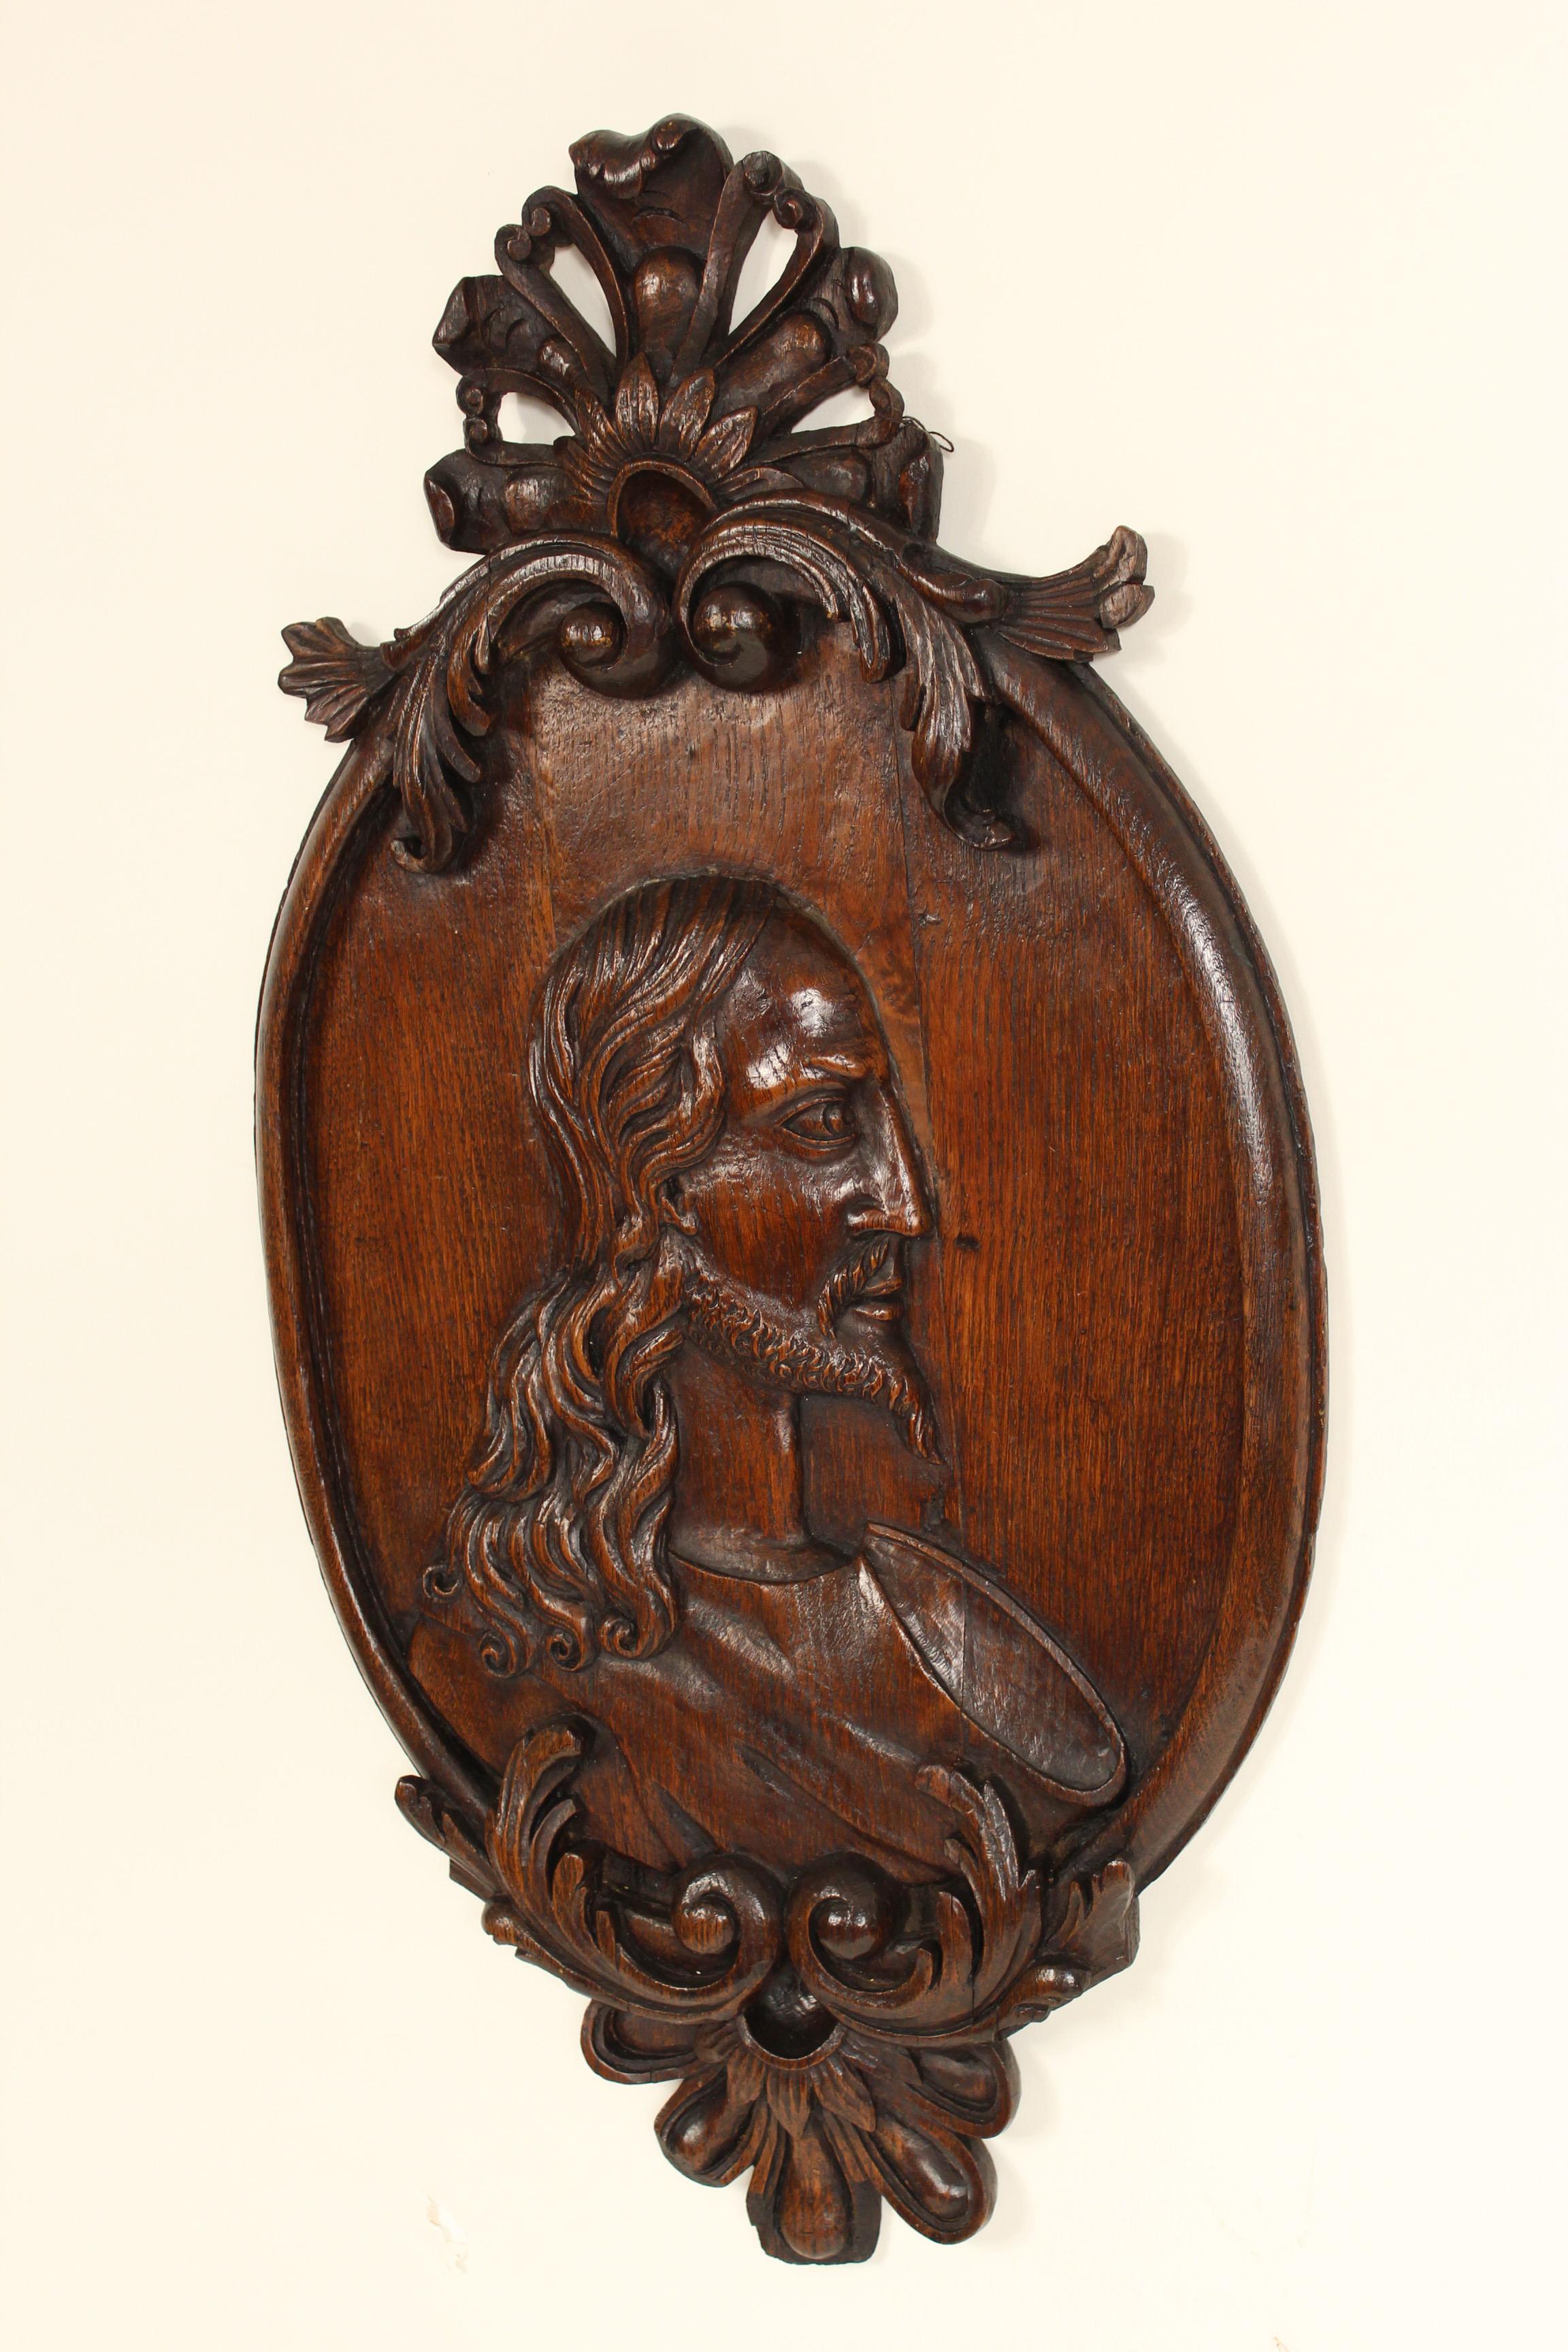 Sculpture religieuse en chêne sculpté, XIXe siècle. Il s'agit d'une sculpture en bois d'excellente qualité avec une belle patine ancienne.